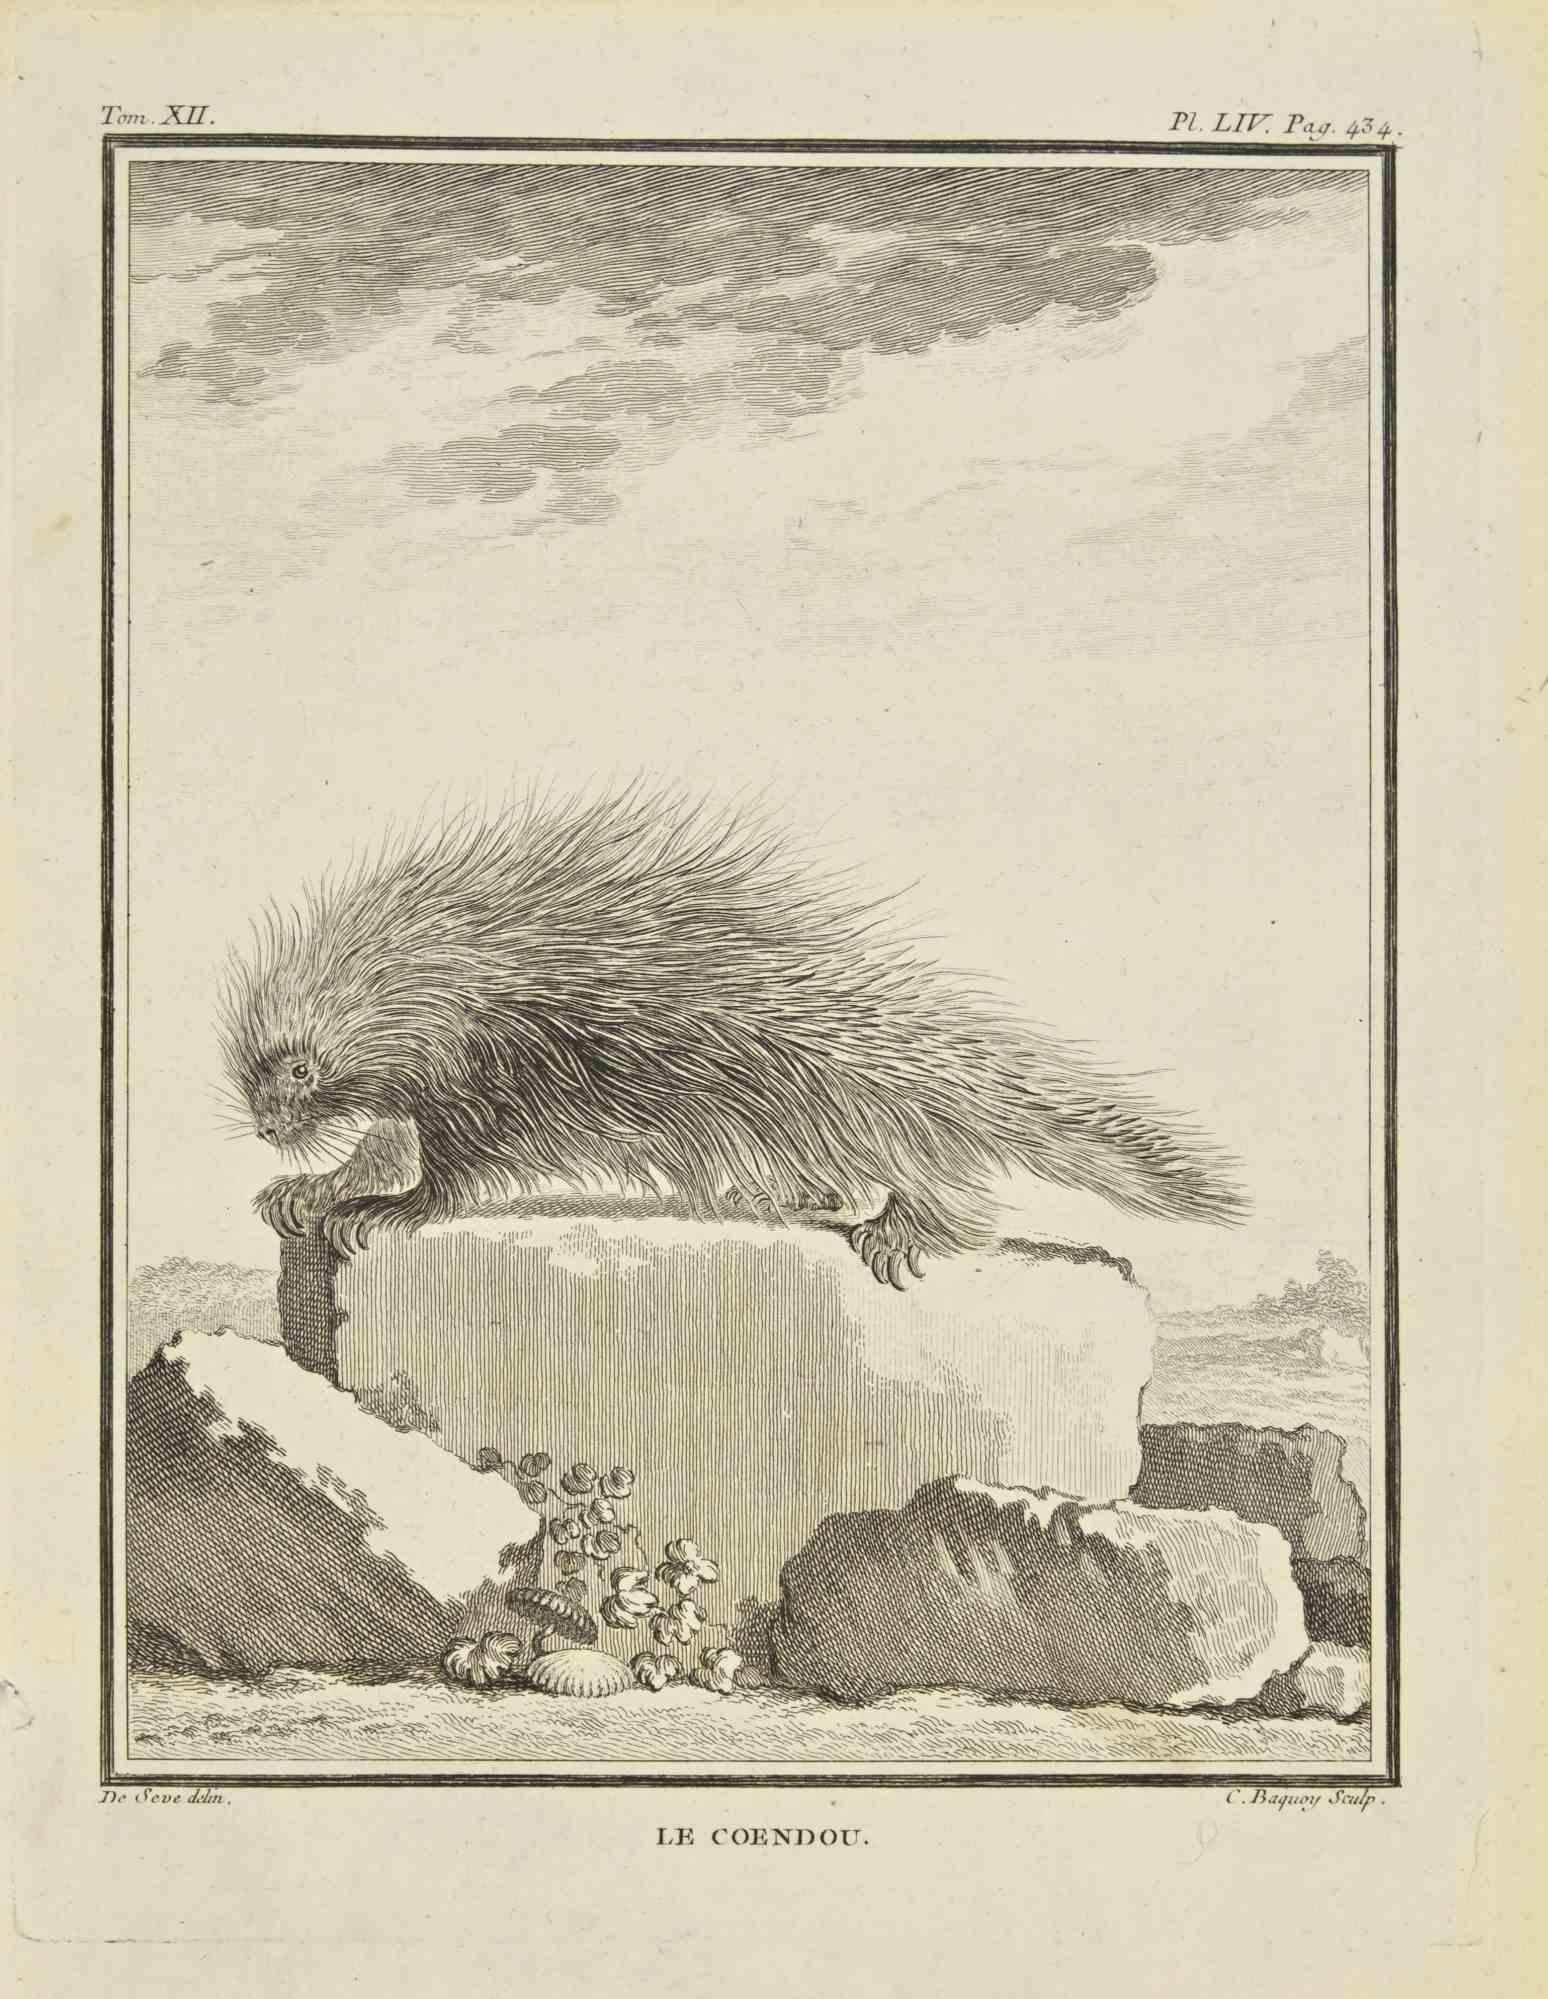 Le Coendou est une eau-forte réalisée par Jean Charles Baquoy en 1771.

Il appartient à la suite "Histoire Naturelle de Buffon".

La signature de l'Artistics est gravée en bas à droite.

Bonnes conditions